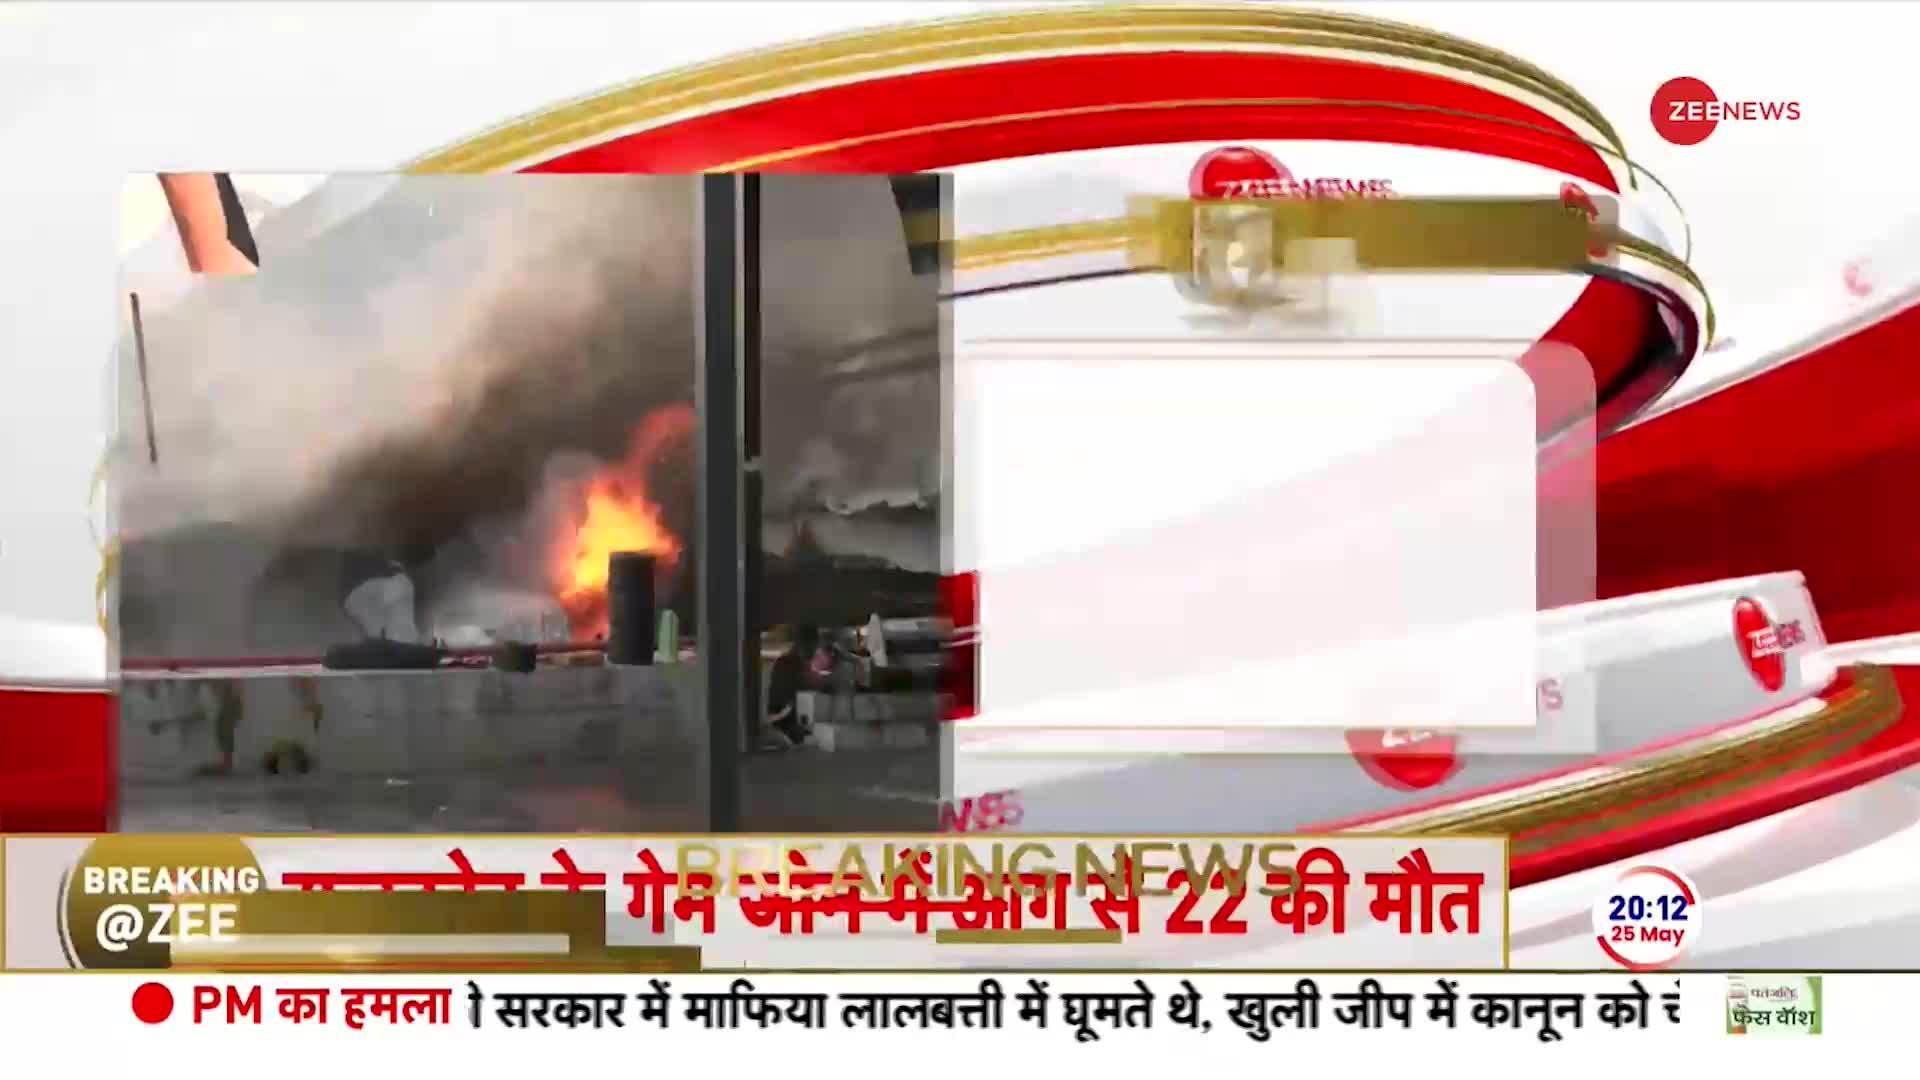 Rajkot Gaming Zone Fire News: राजकोट के गेम जोन में लगी आग, 24 की मौत